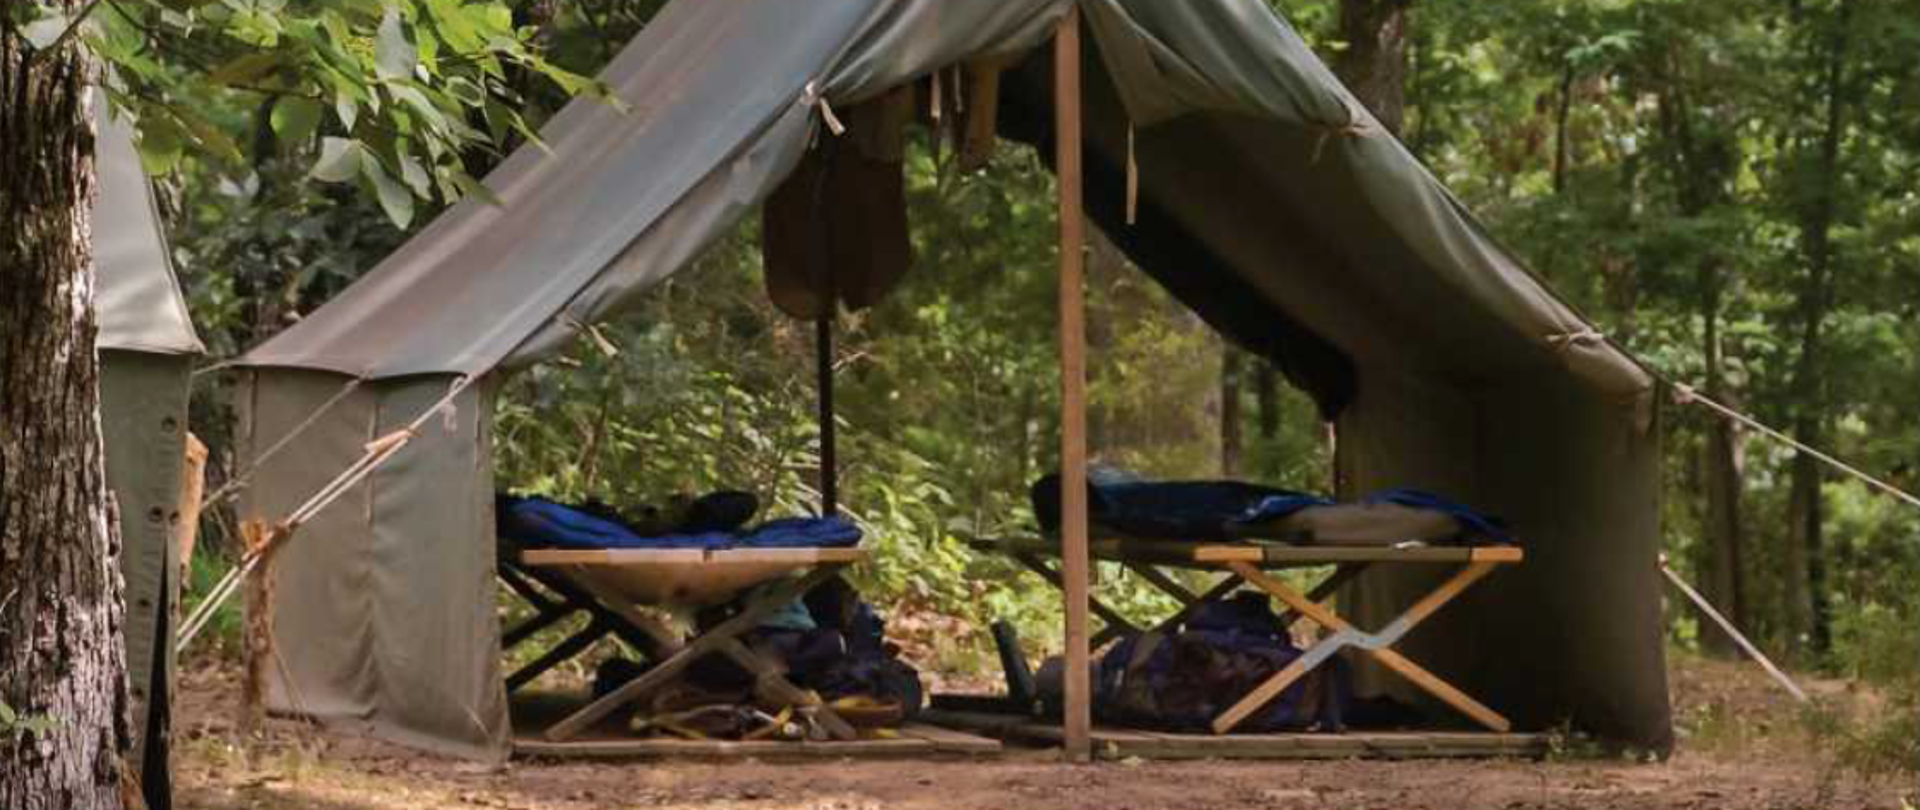 Zdjęcie przedstawia namiot w lesie